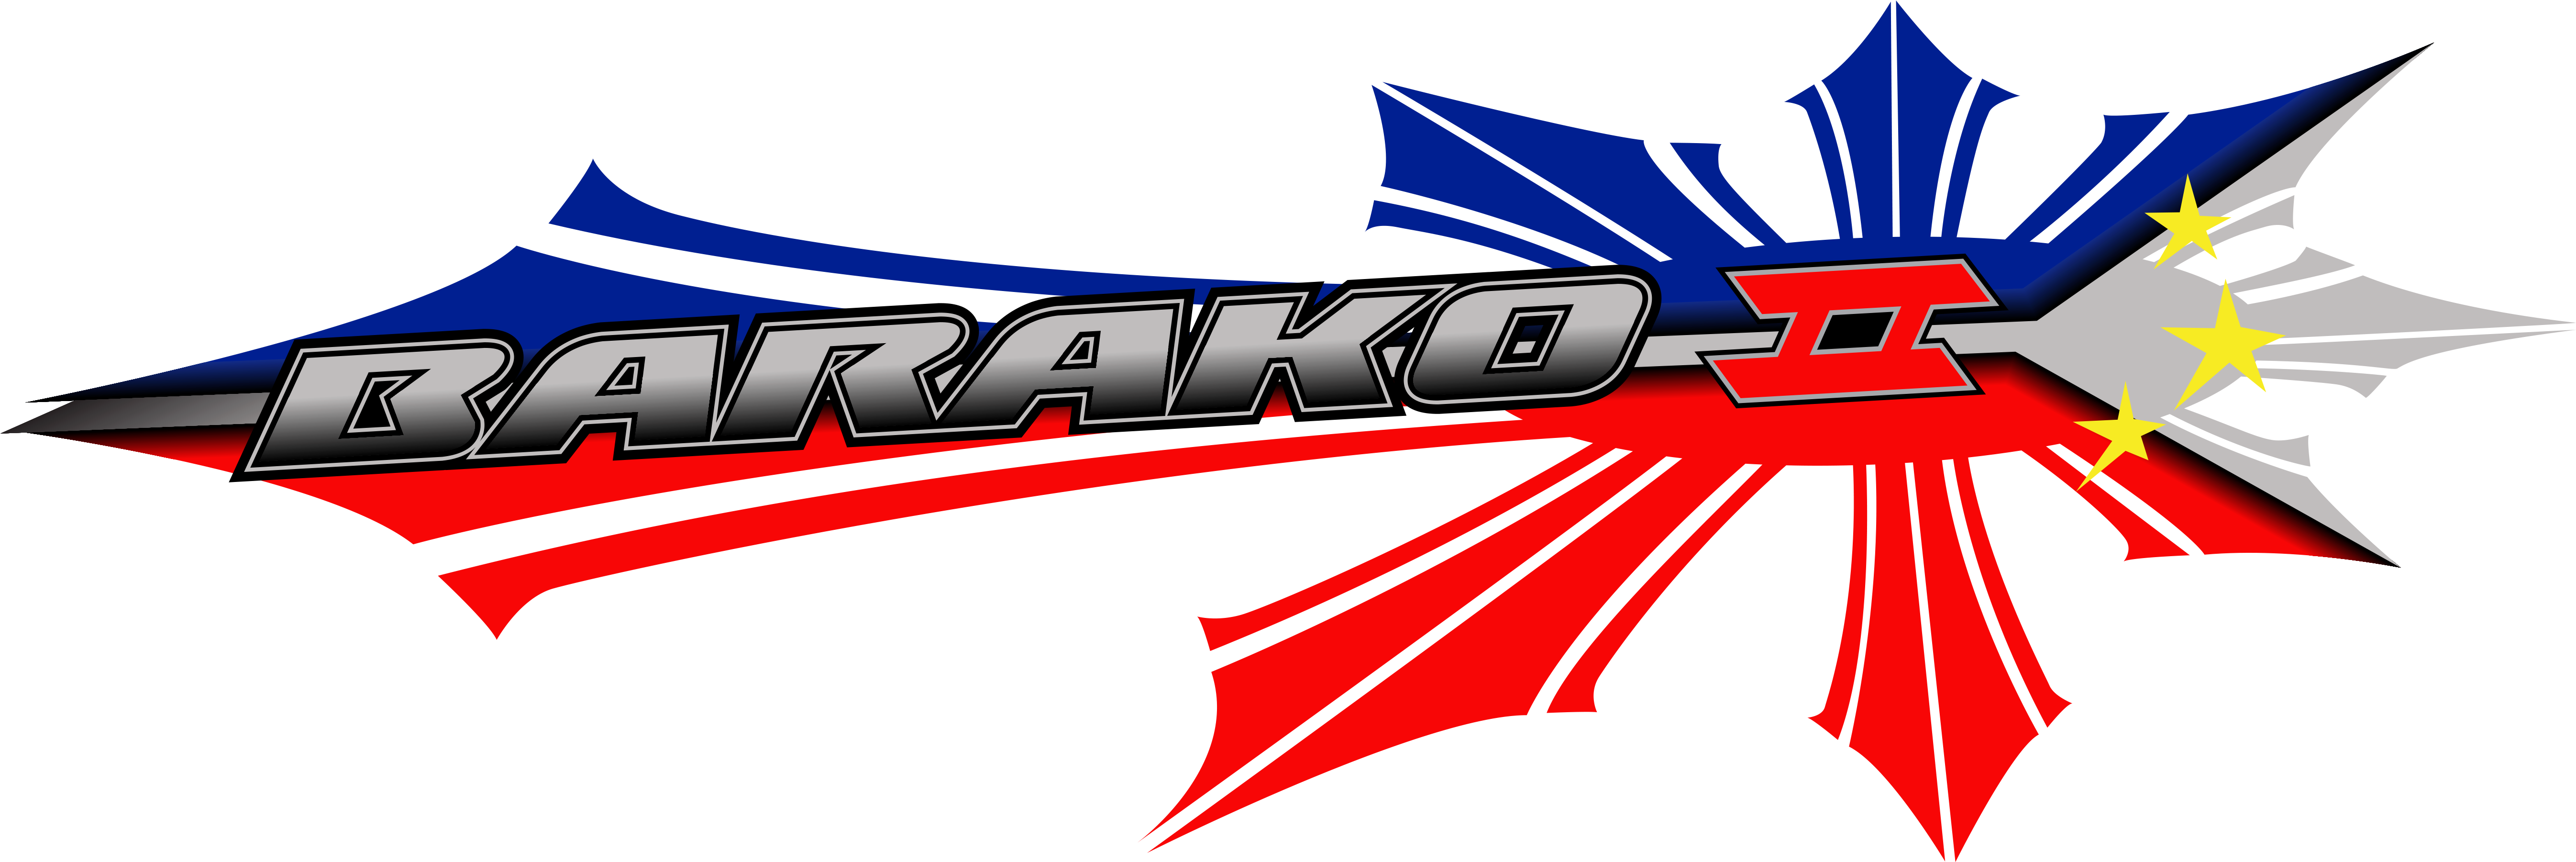 Kawasaki logo, Vector Logo of Kawasaki brand free download (eps, ai, png,  cdr) formats